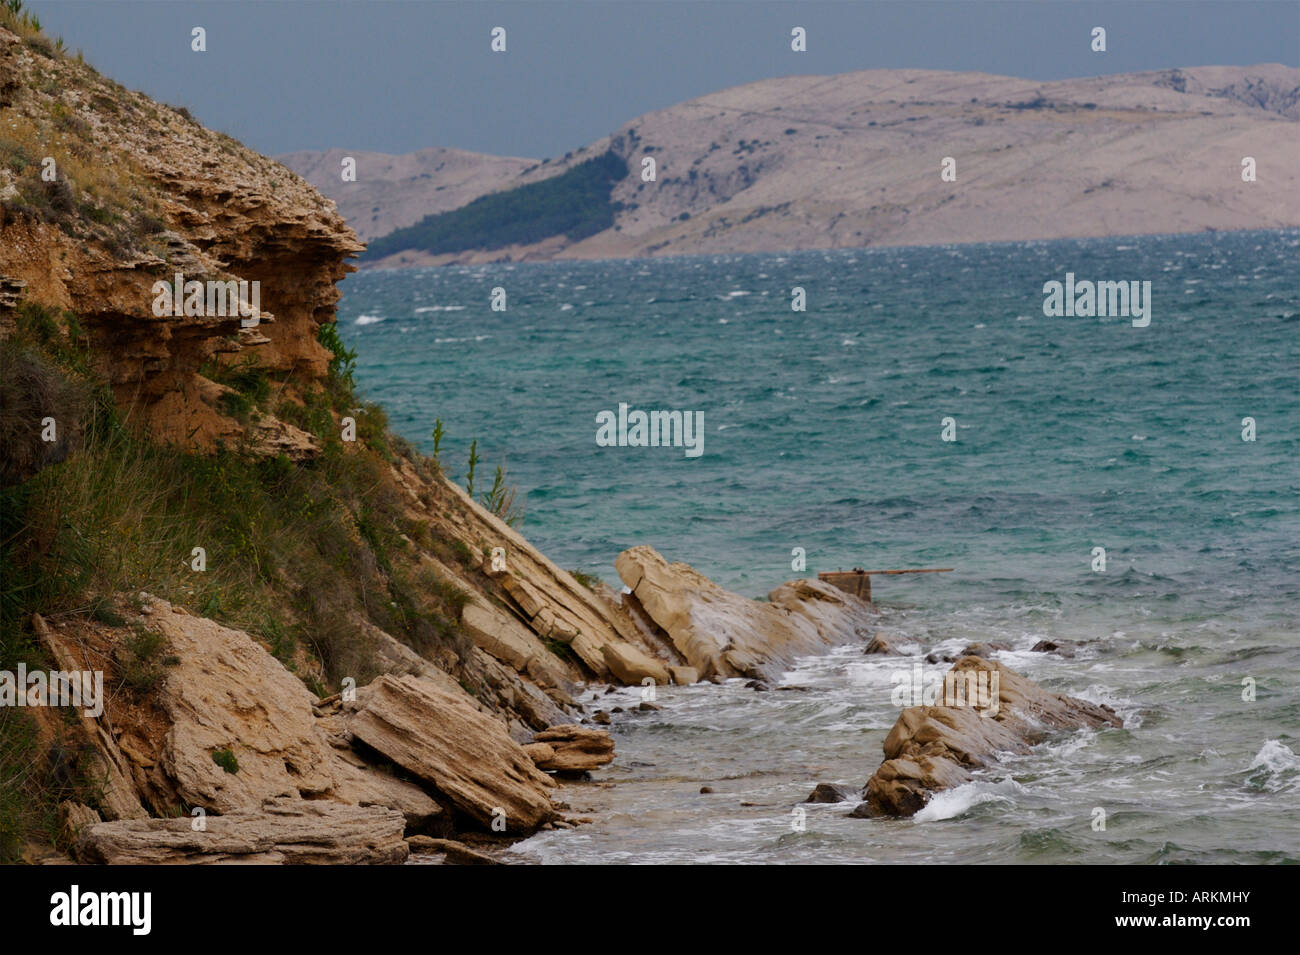 Des formations rocheuses fantastiques sur la côte nord en bord de falaise, Mer Adriatique Croatie île de Pag north coast Beach beauté dans la nature être Banque D'Images